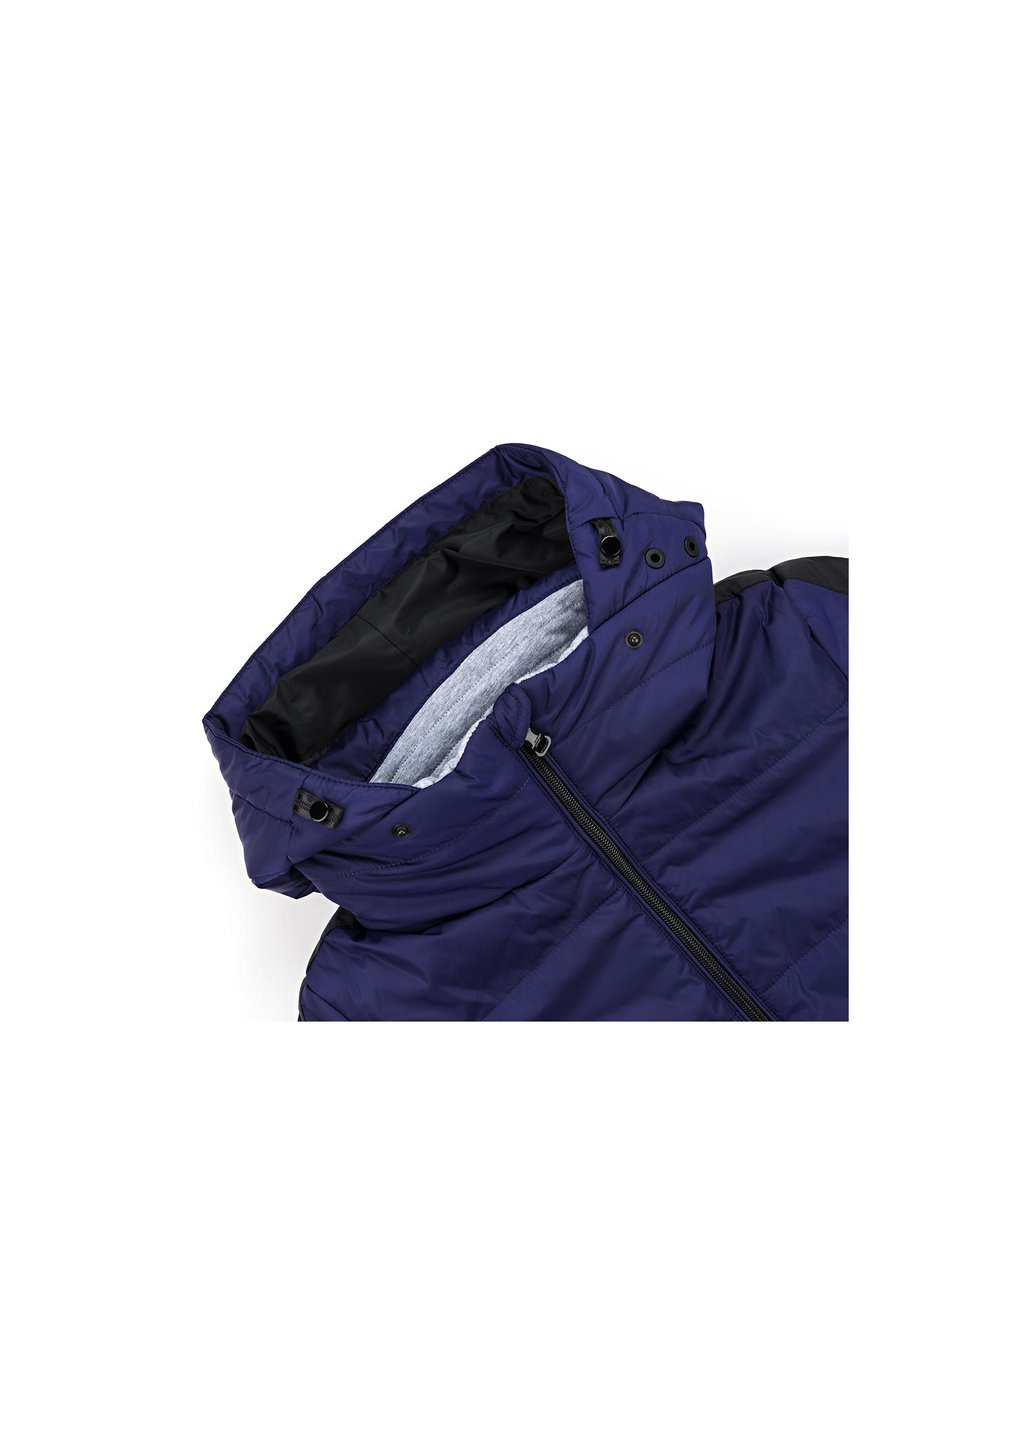 Голубая демисезонная куртка с капюшоном (sicmy-g306-116b-blue) Snowimage